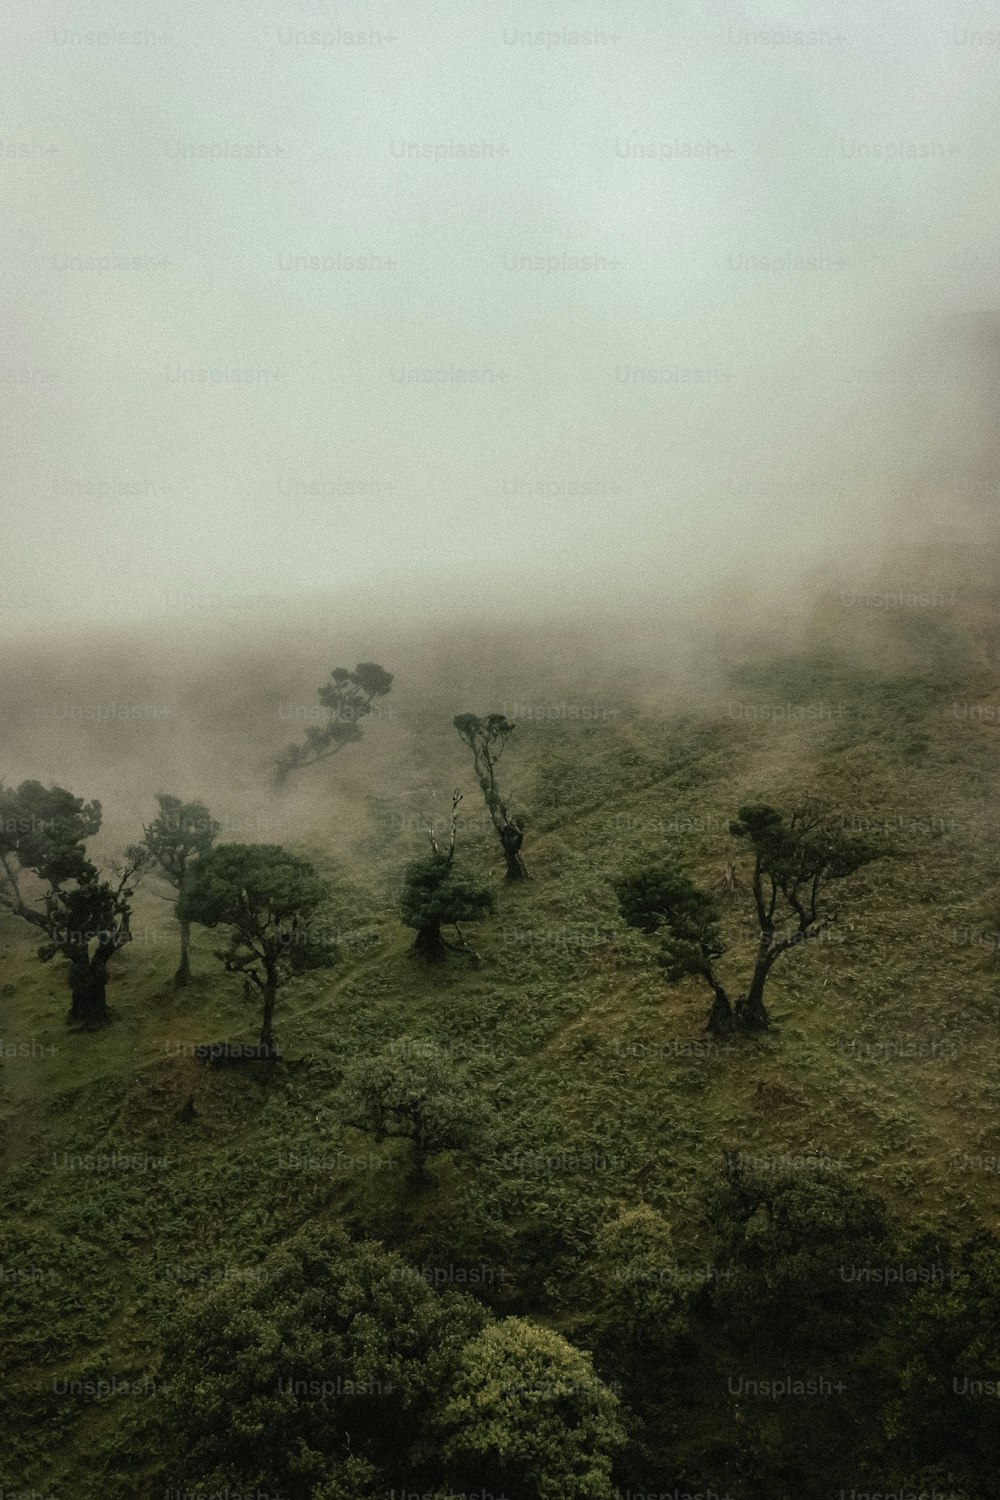 Un gruppo di alberi su una collina coperta di nebbia